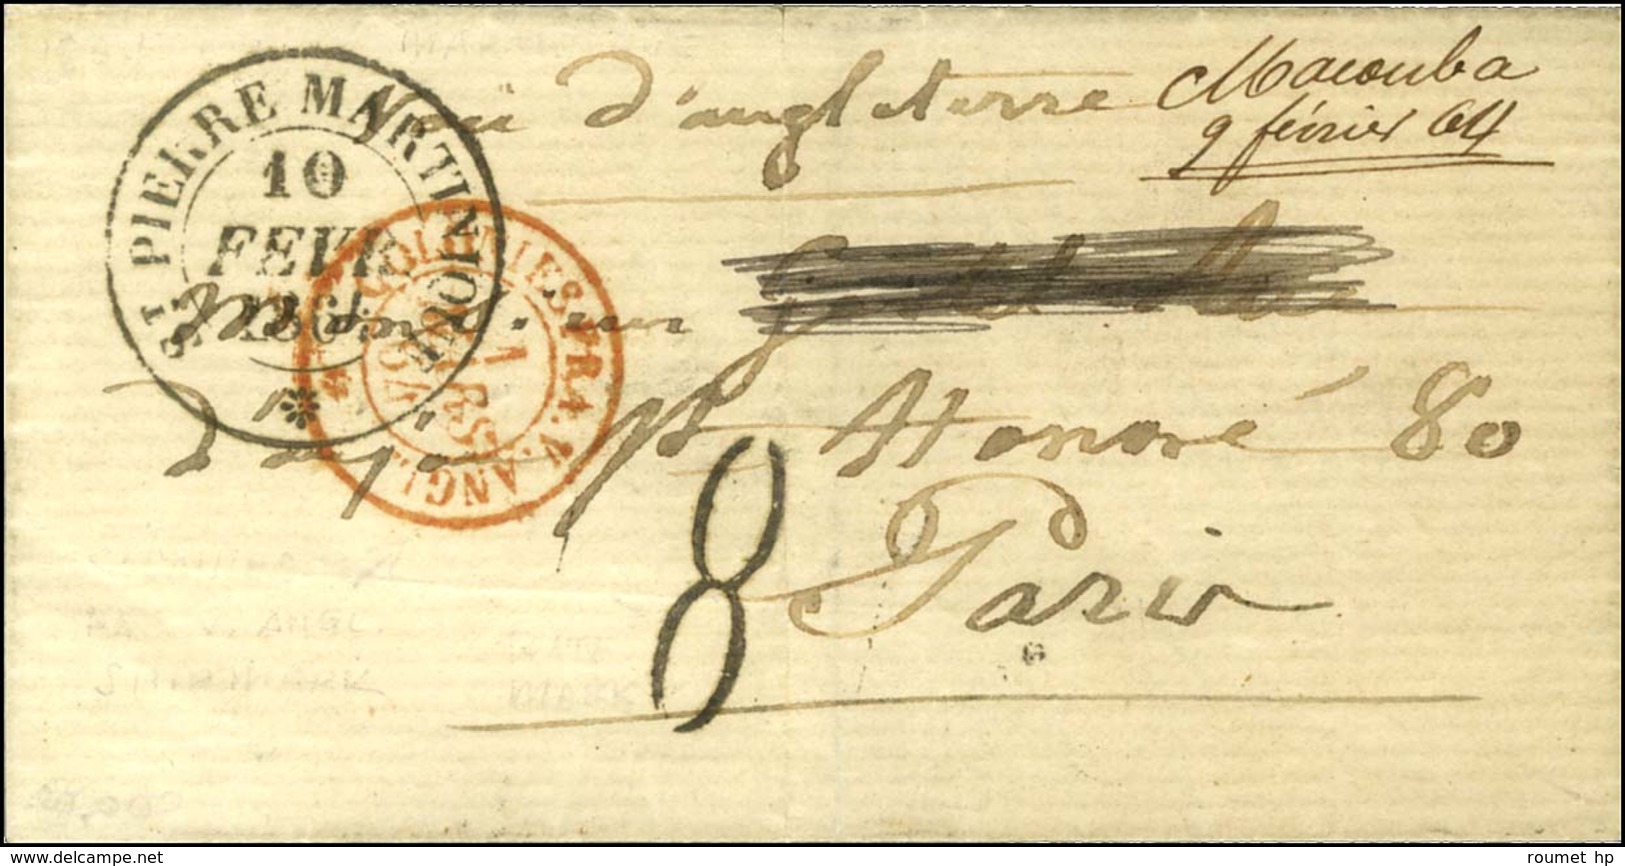 Lettre Datée De Macouba Le 8 Février 1864 Adressée à Paris. Au Recto, Mention Manuscrite '' Macouba 9 Février 64 '', Càd - Poste Maritime